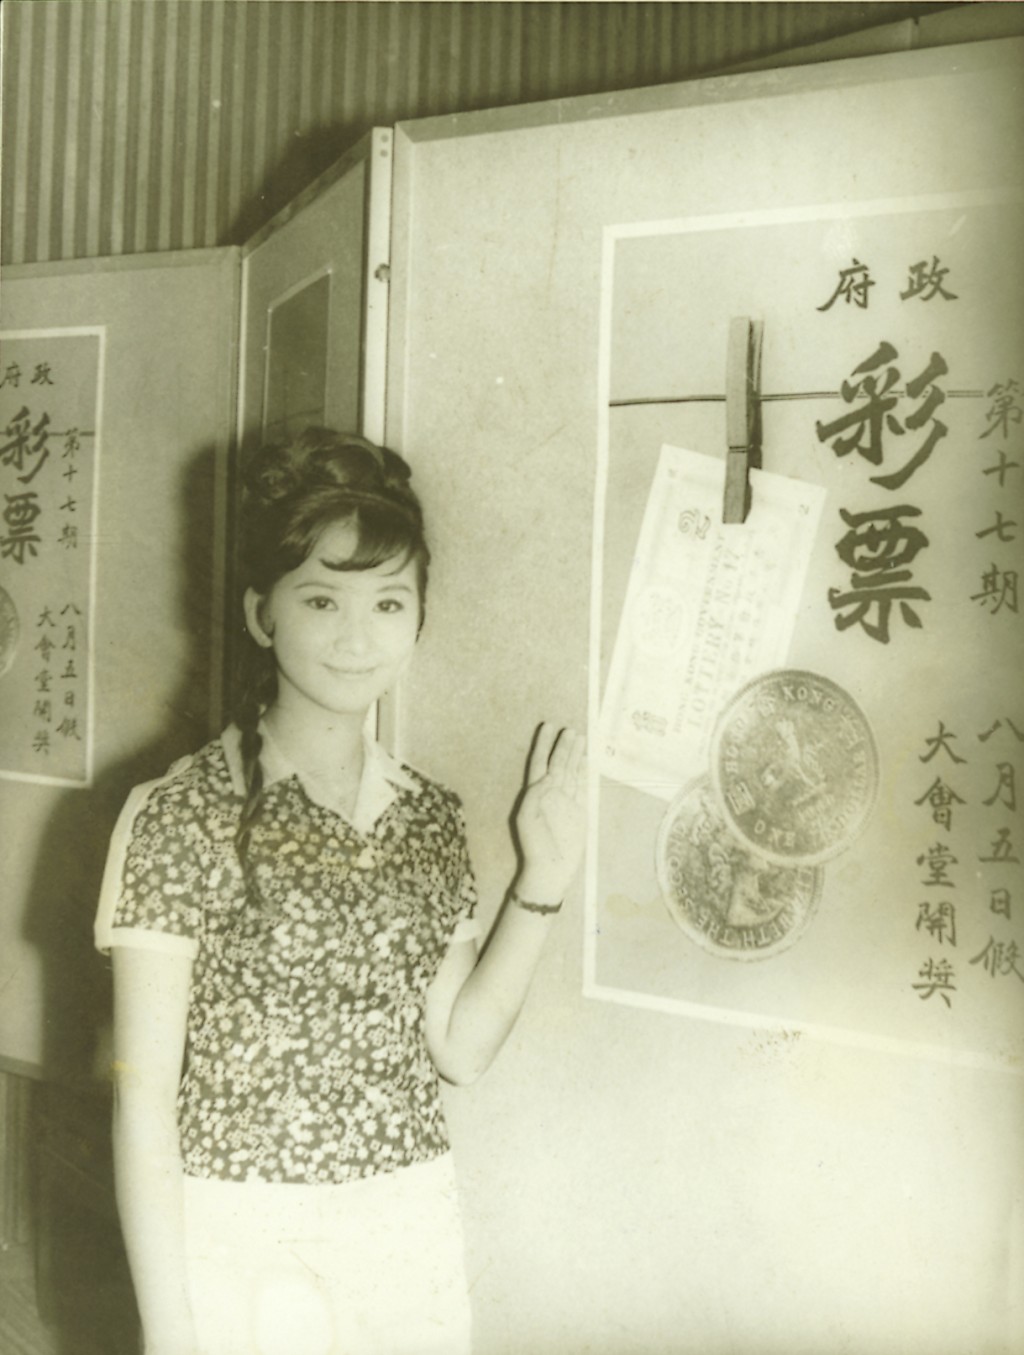 薛家燕于1967年为彩票做宣传。